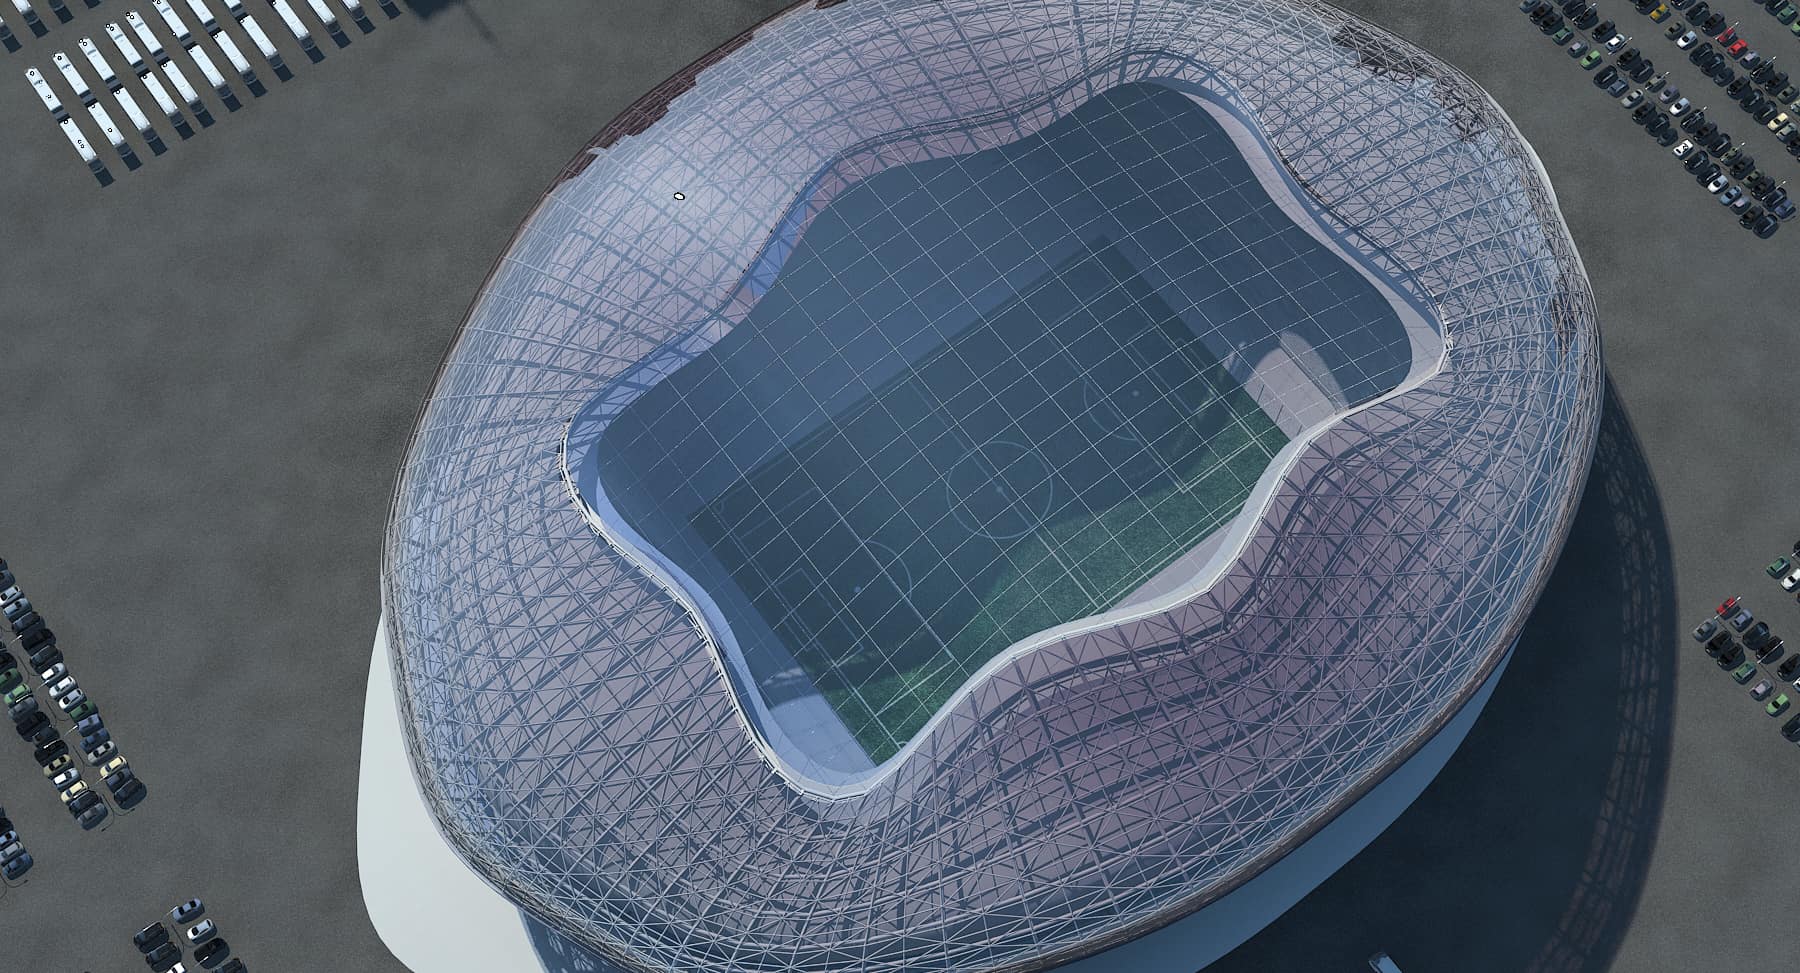 Futuristic Stadium design